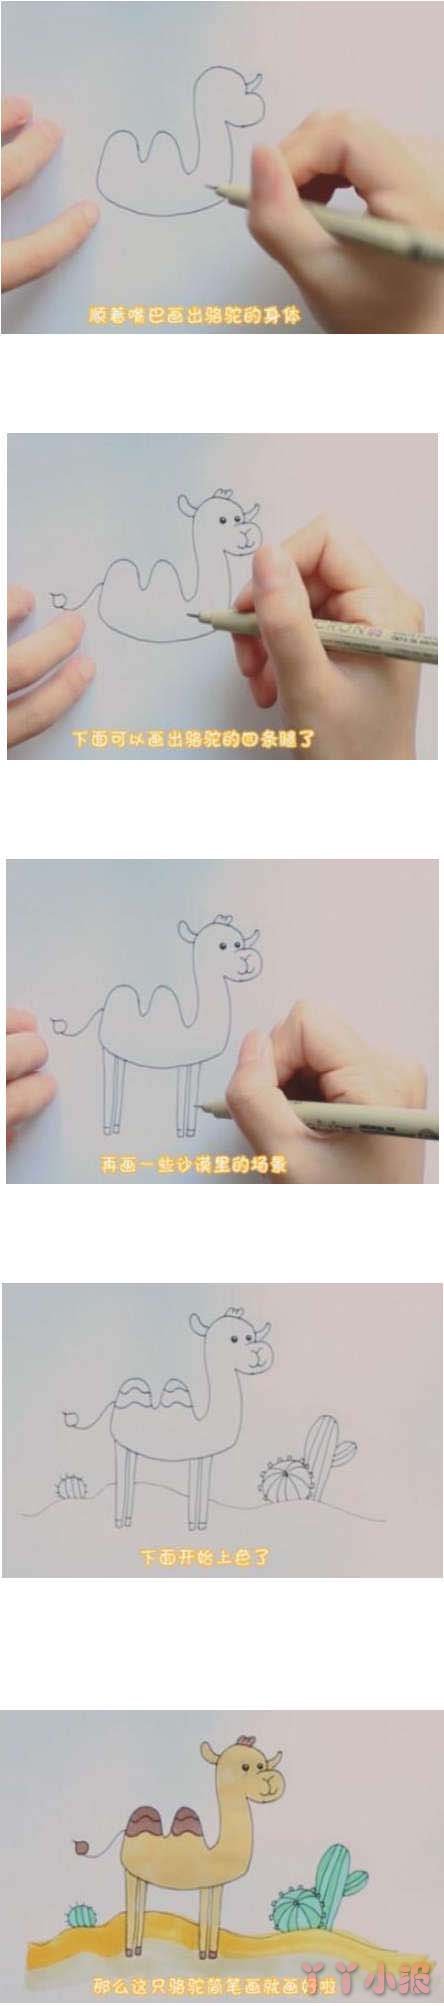 教你如何画骆驼的简笔画怎么画简单好看带步骤